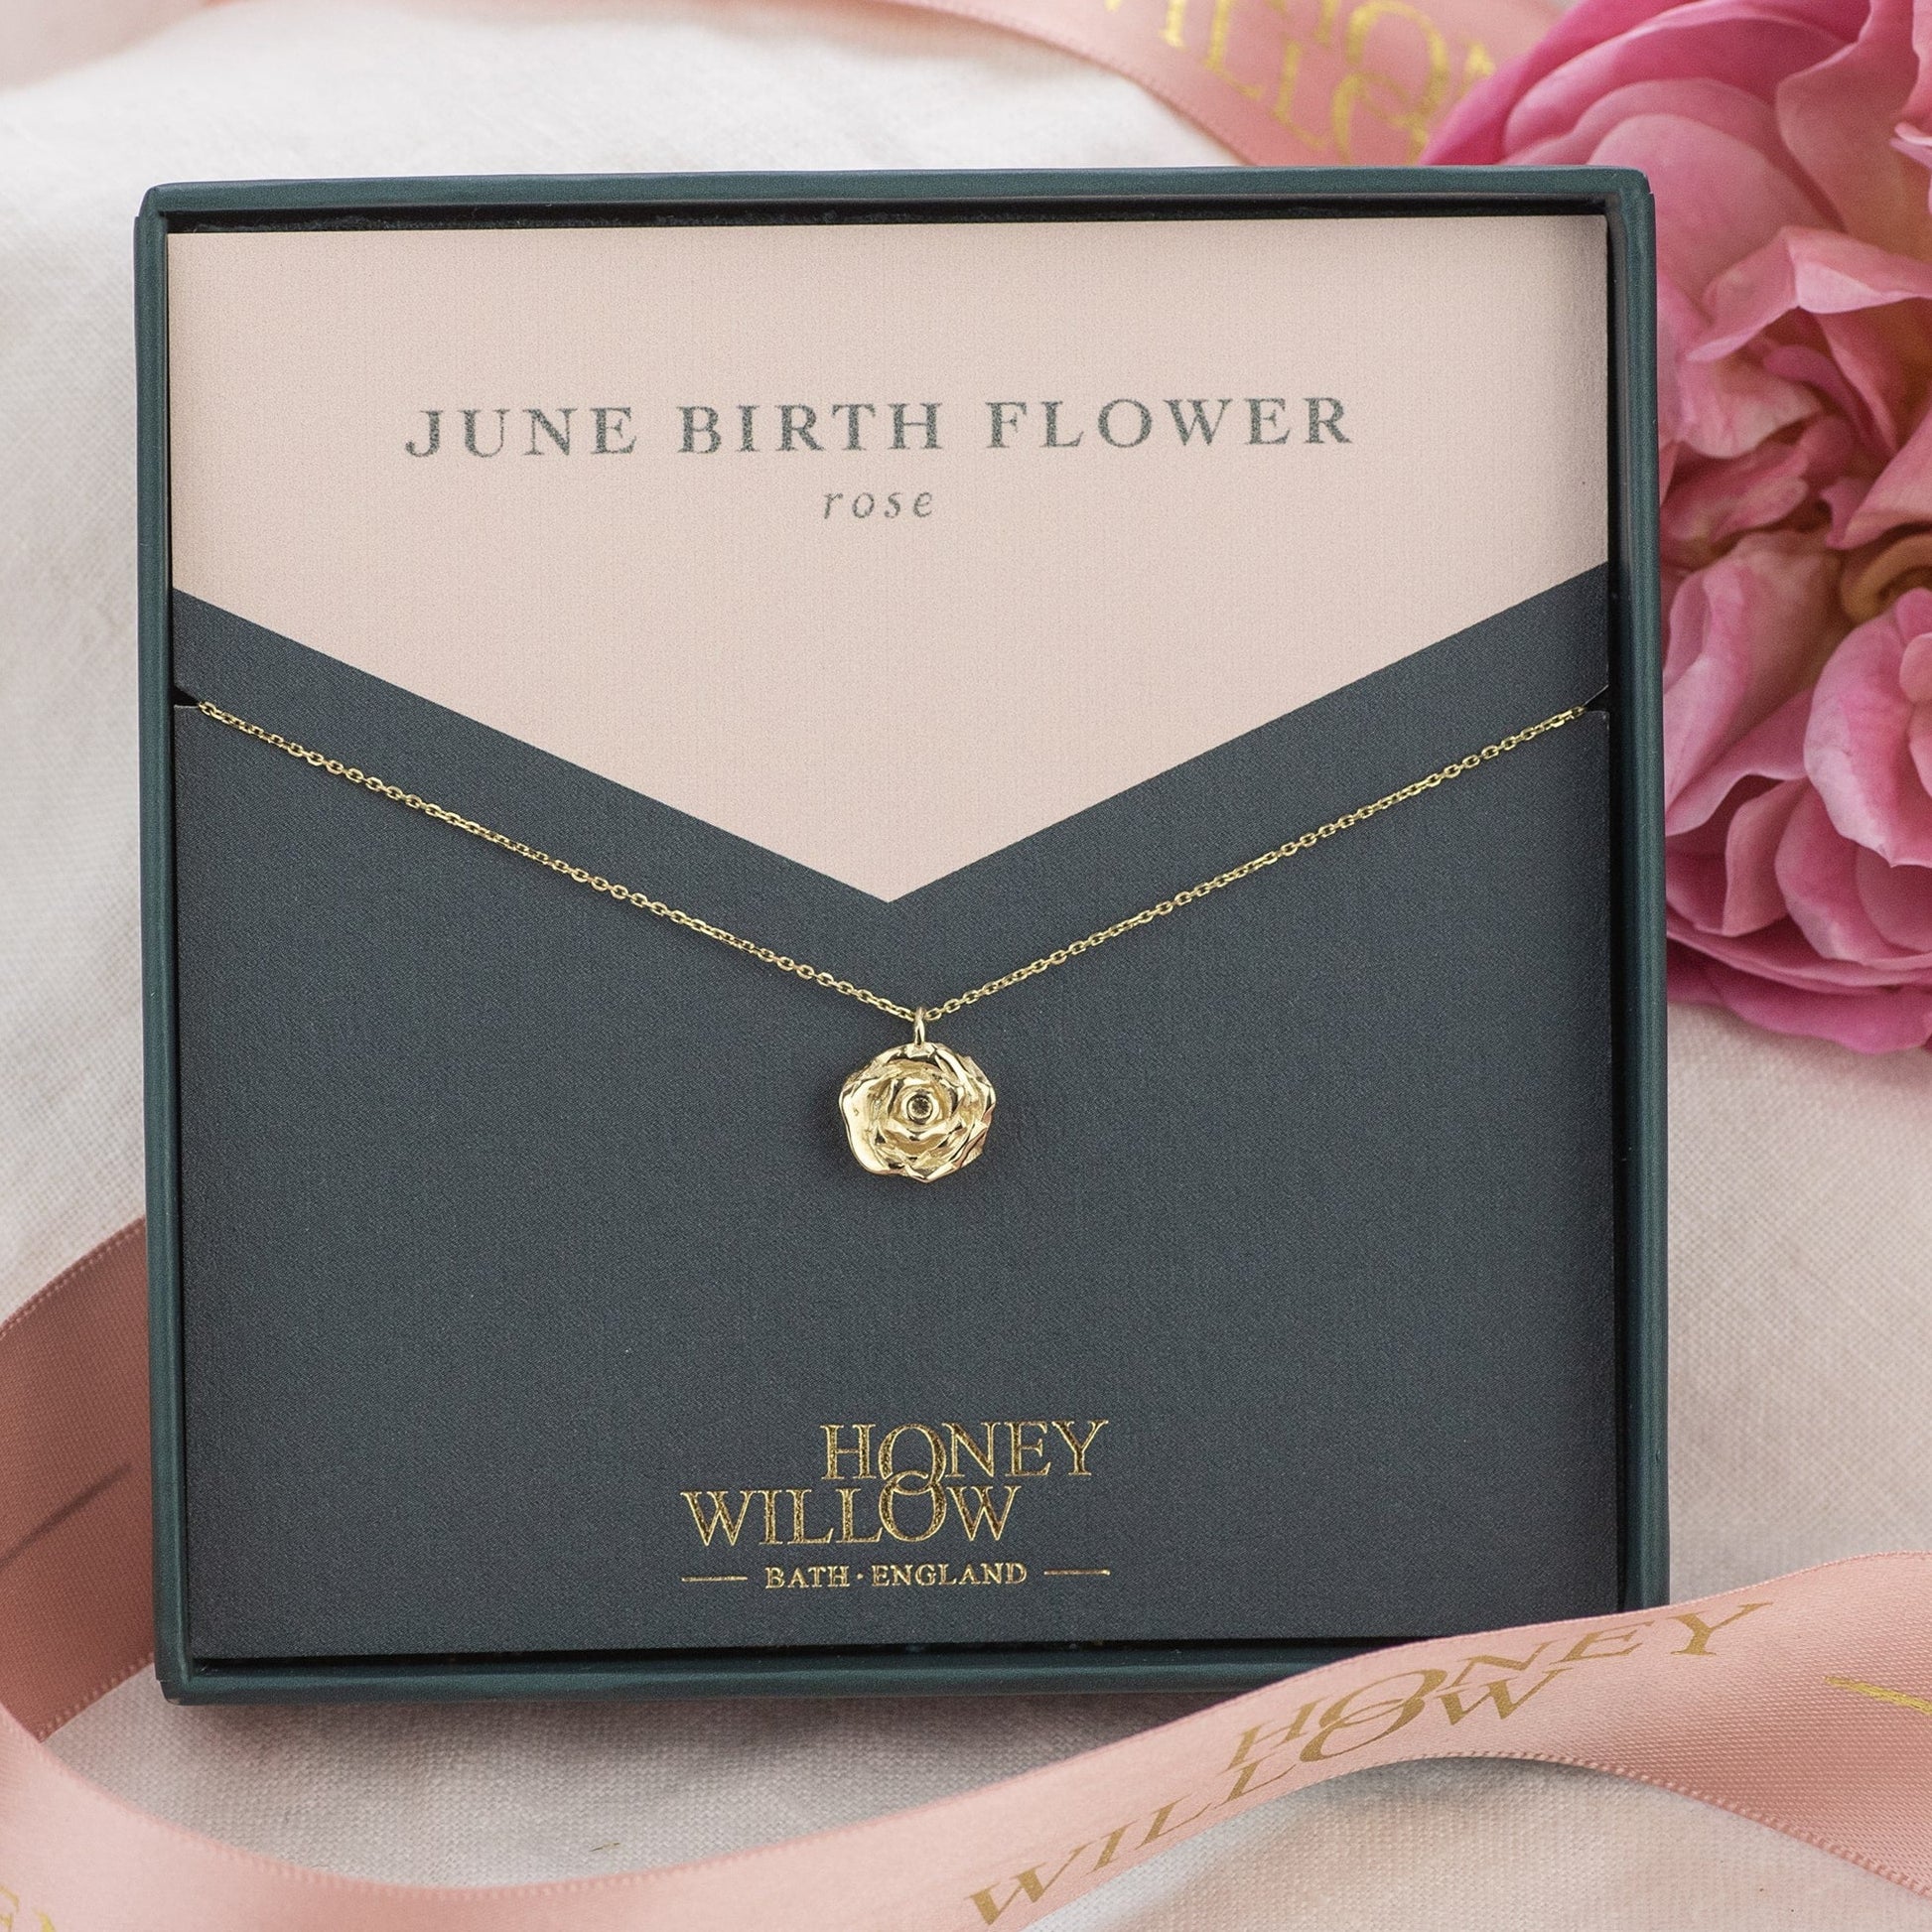 June Birth Flower Necklace - Rose - 9kt Gold